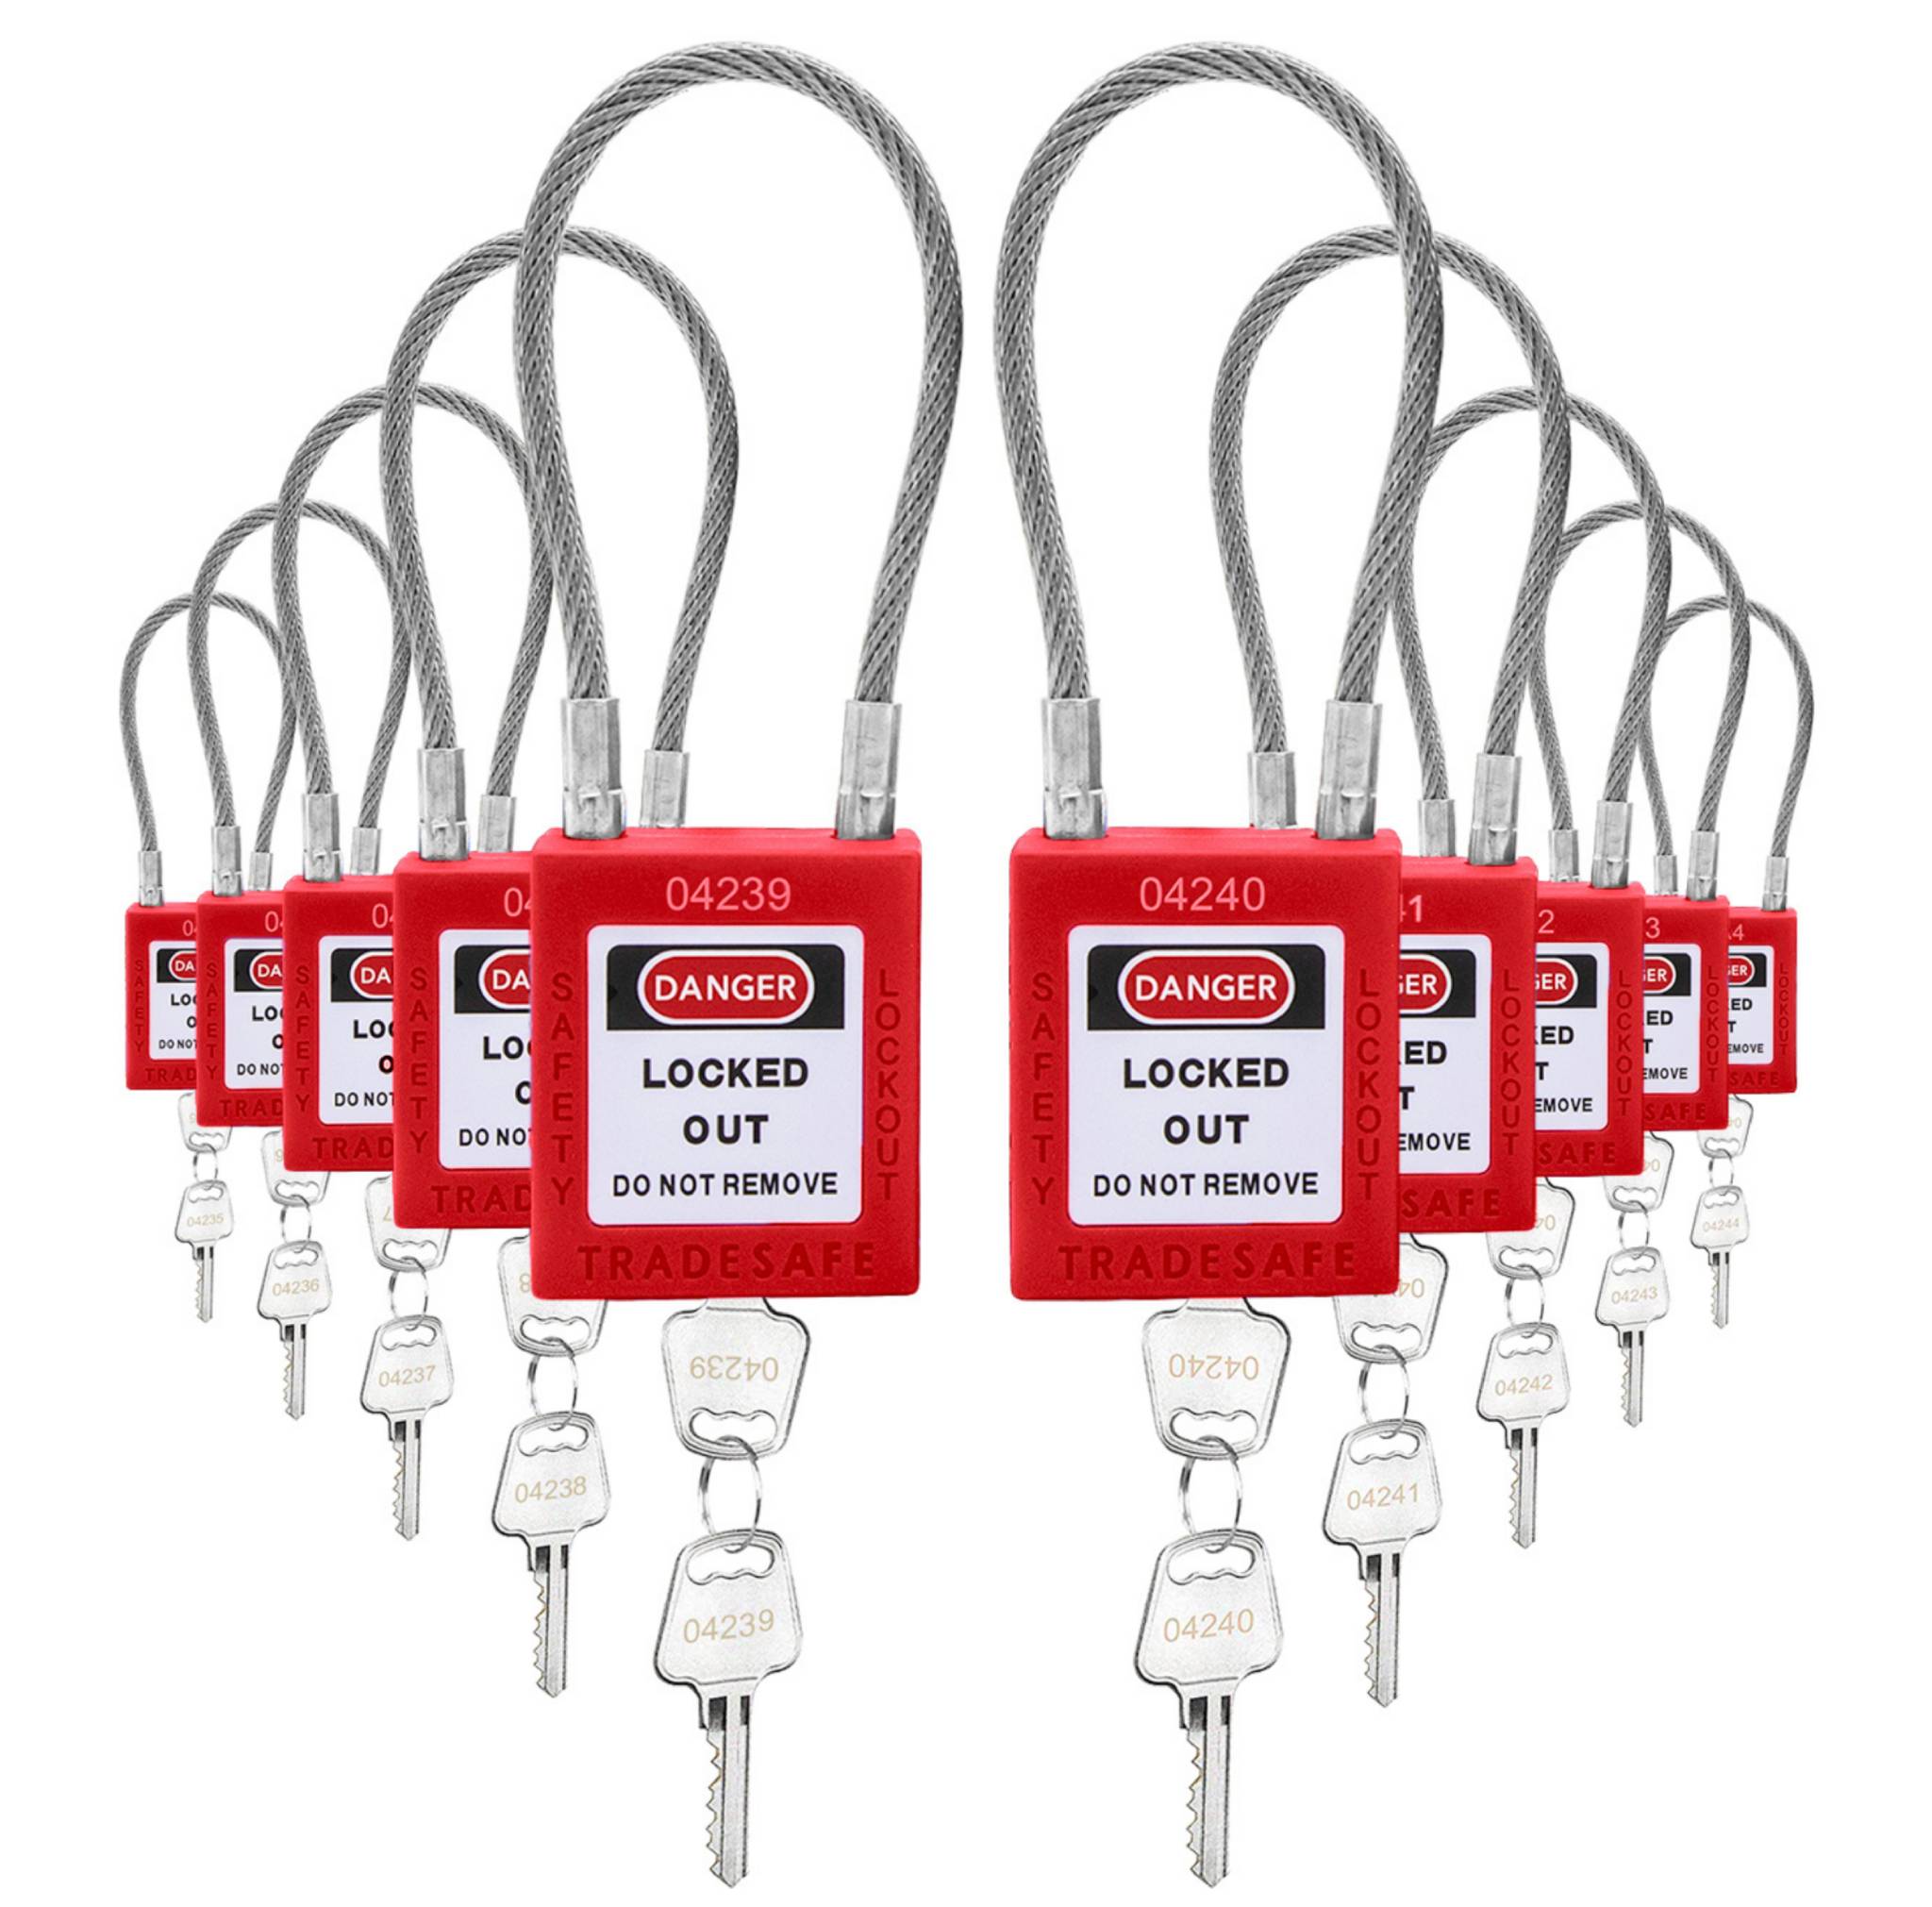 Candados de bloqueo de seguridad con grilletes de cable - 10 llaves diferentes - Rojo - 2 llaves por candado